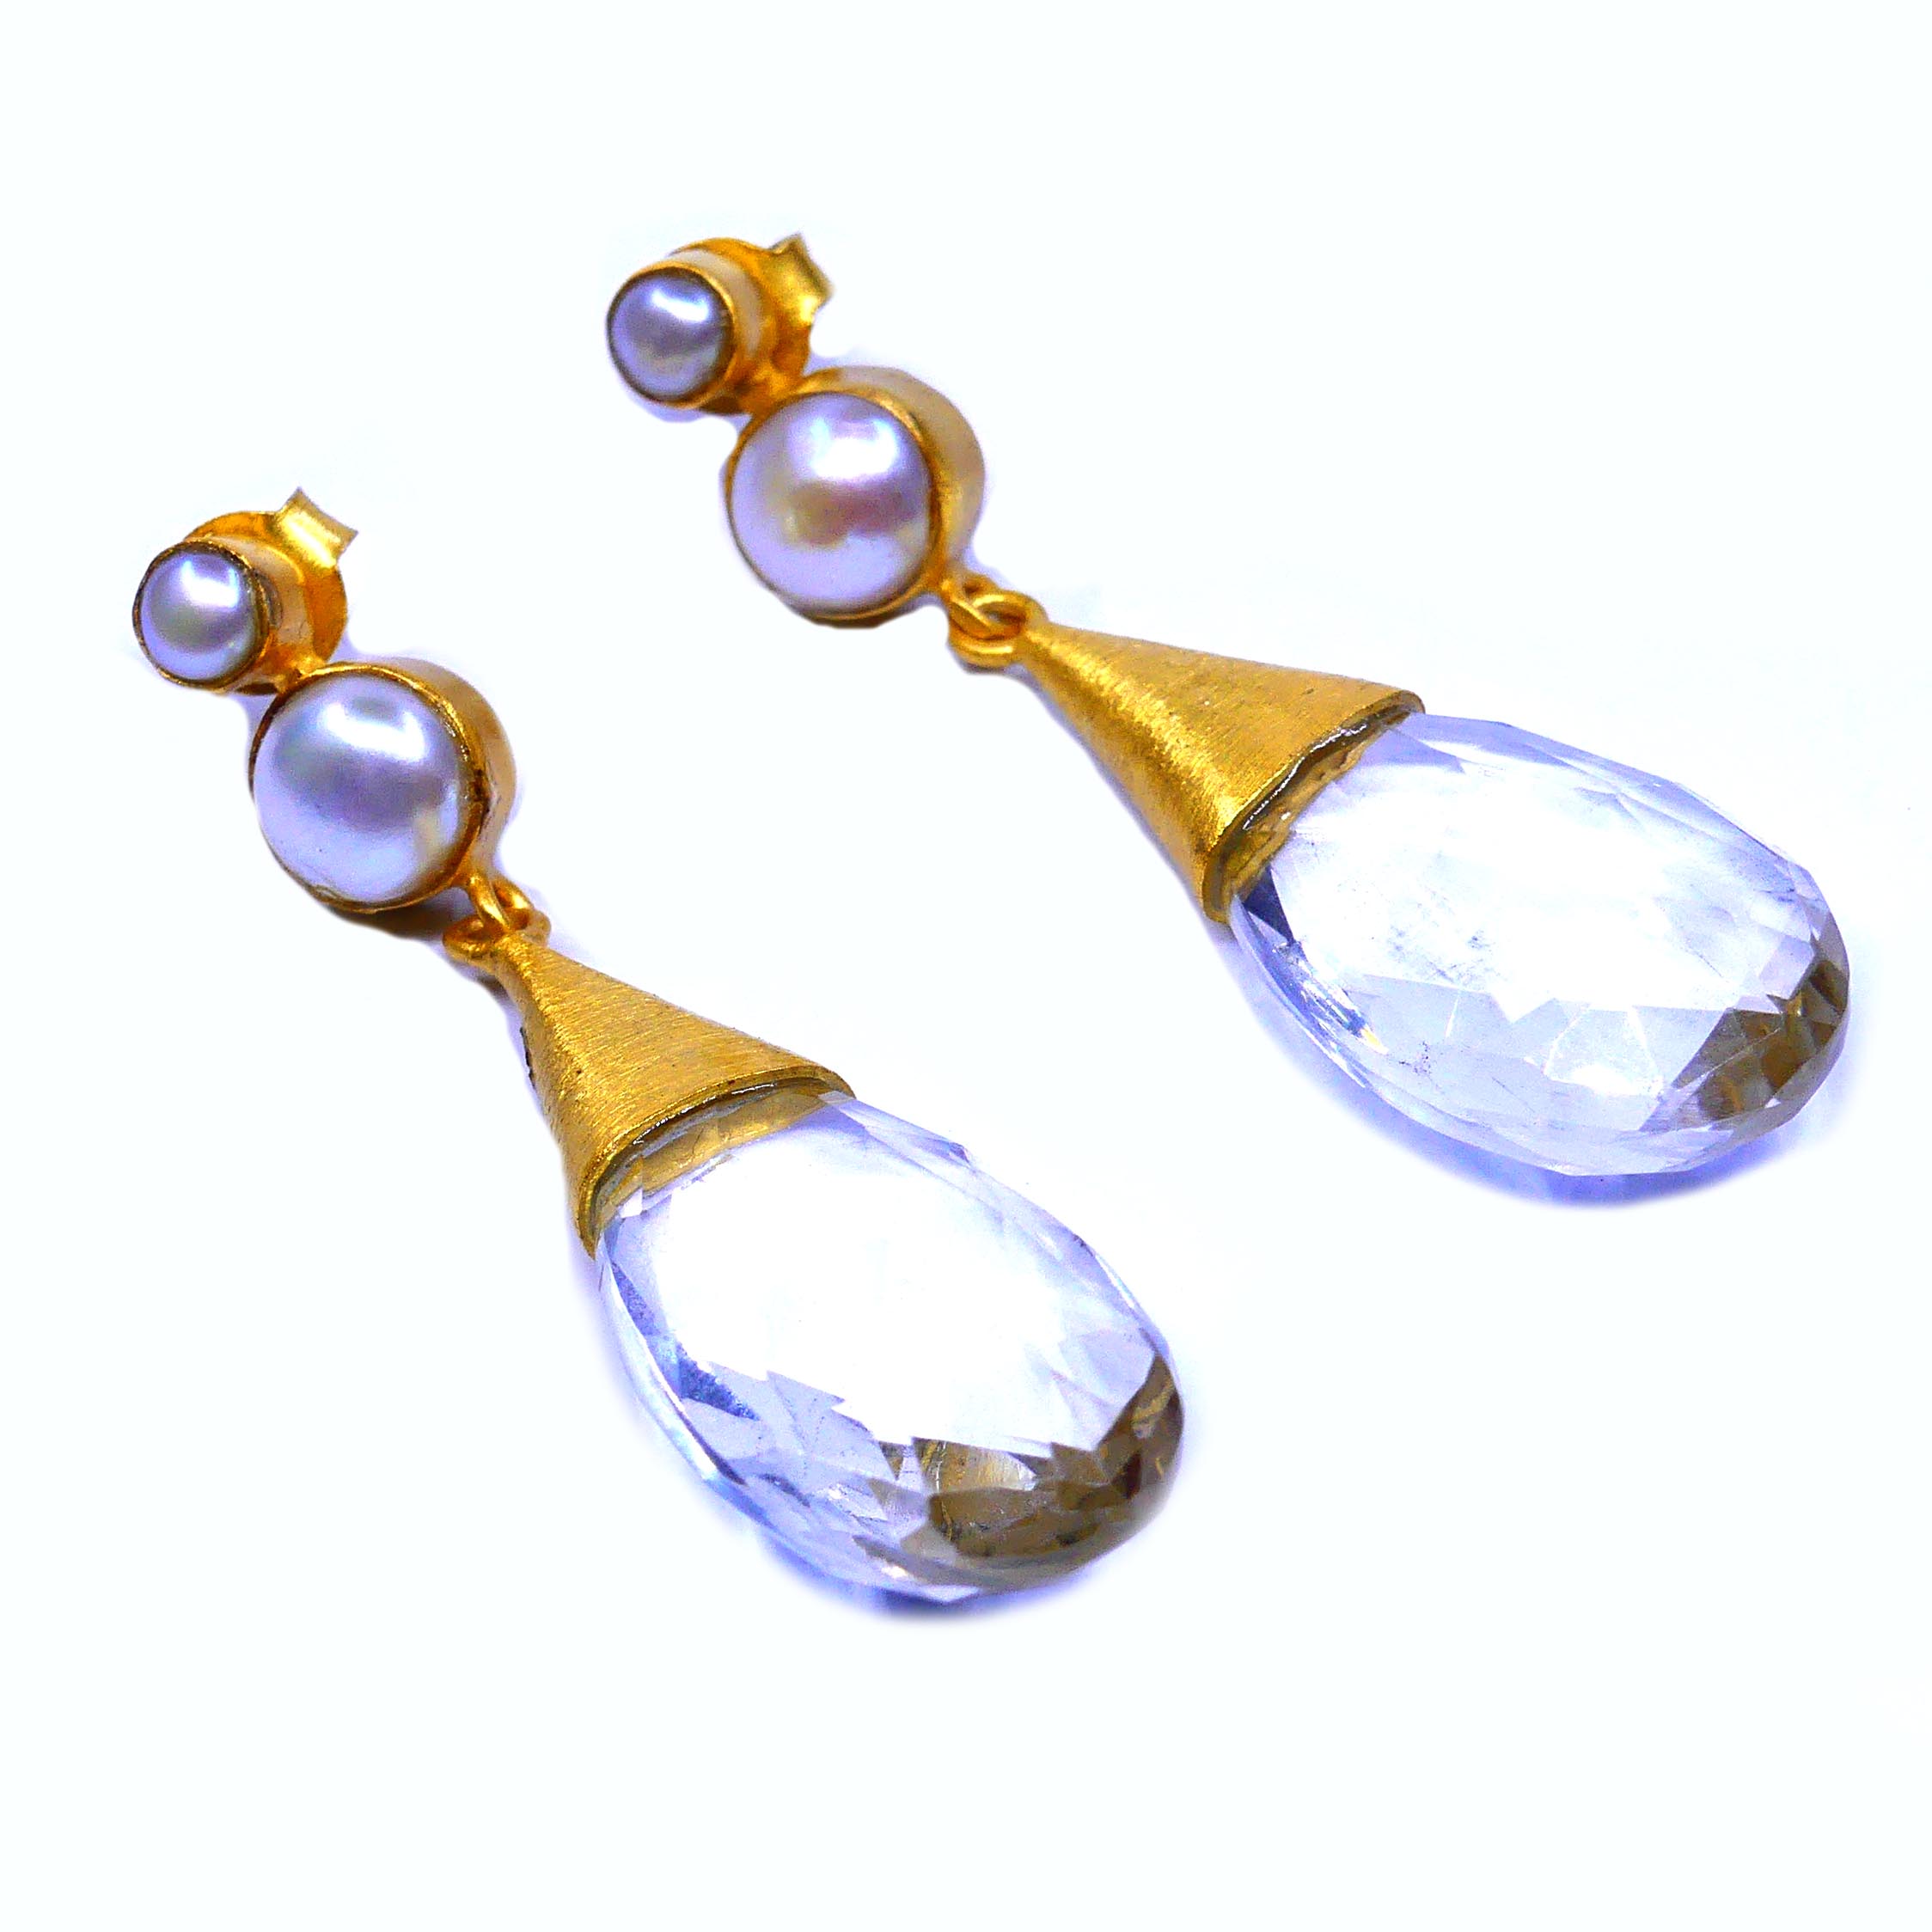 Pearl Crystal Earrings